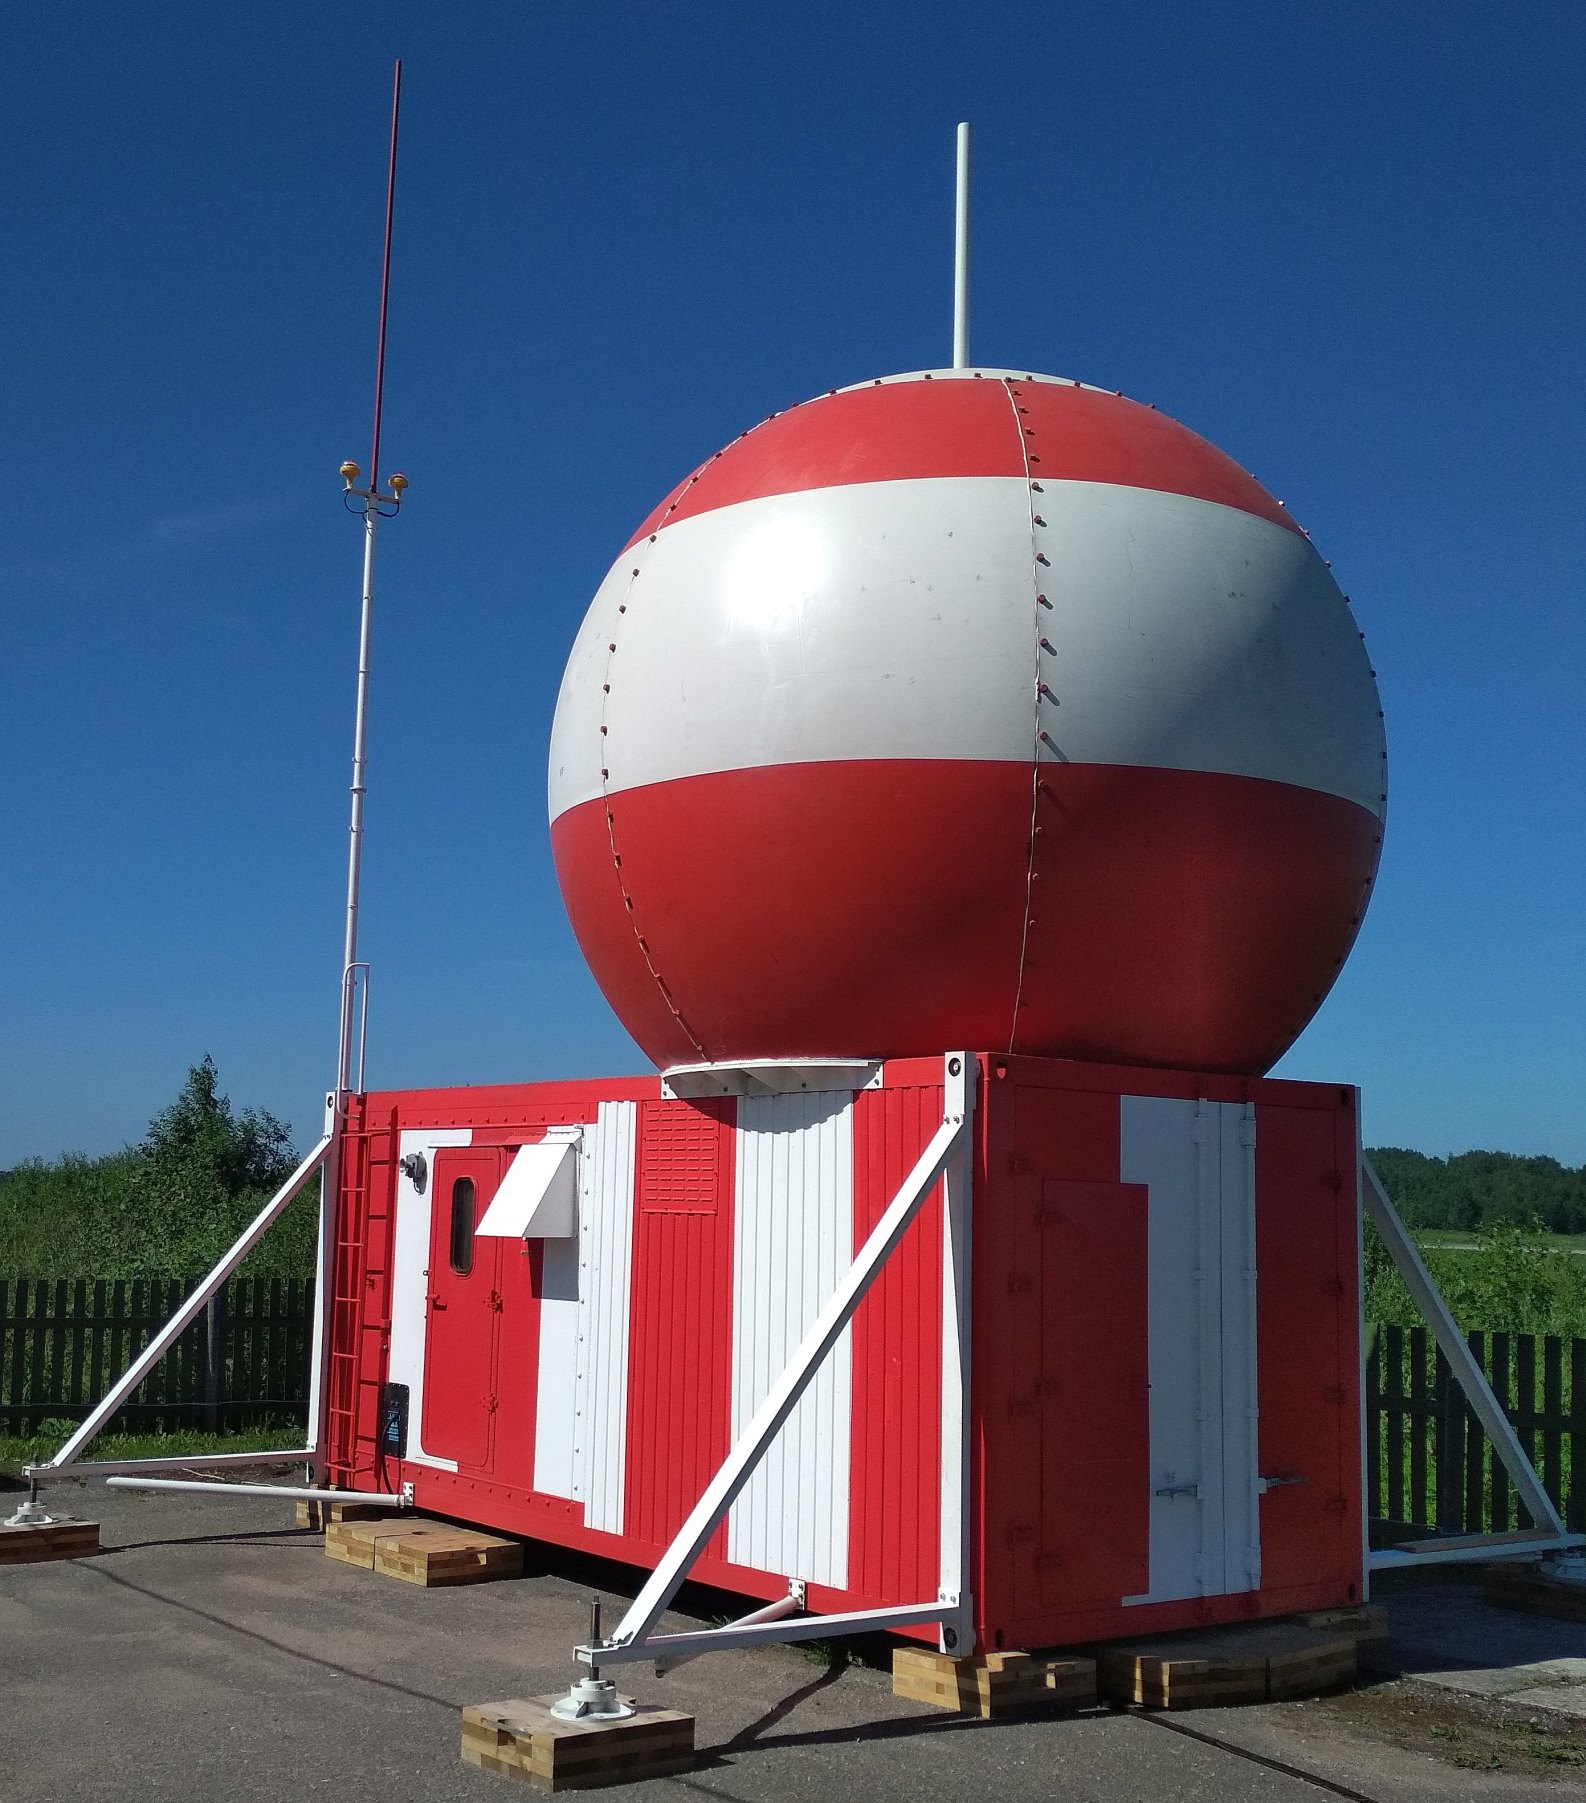 Terminal Area Radar Complex “RC-10RA”